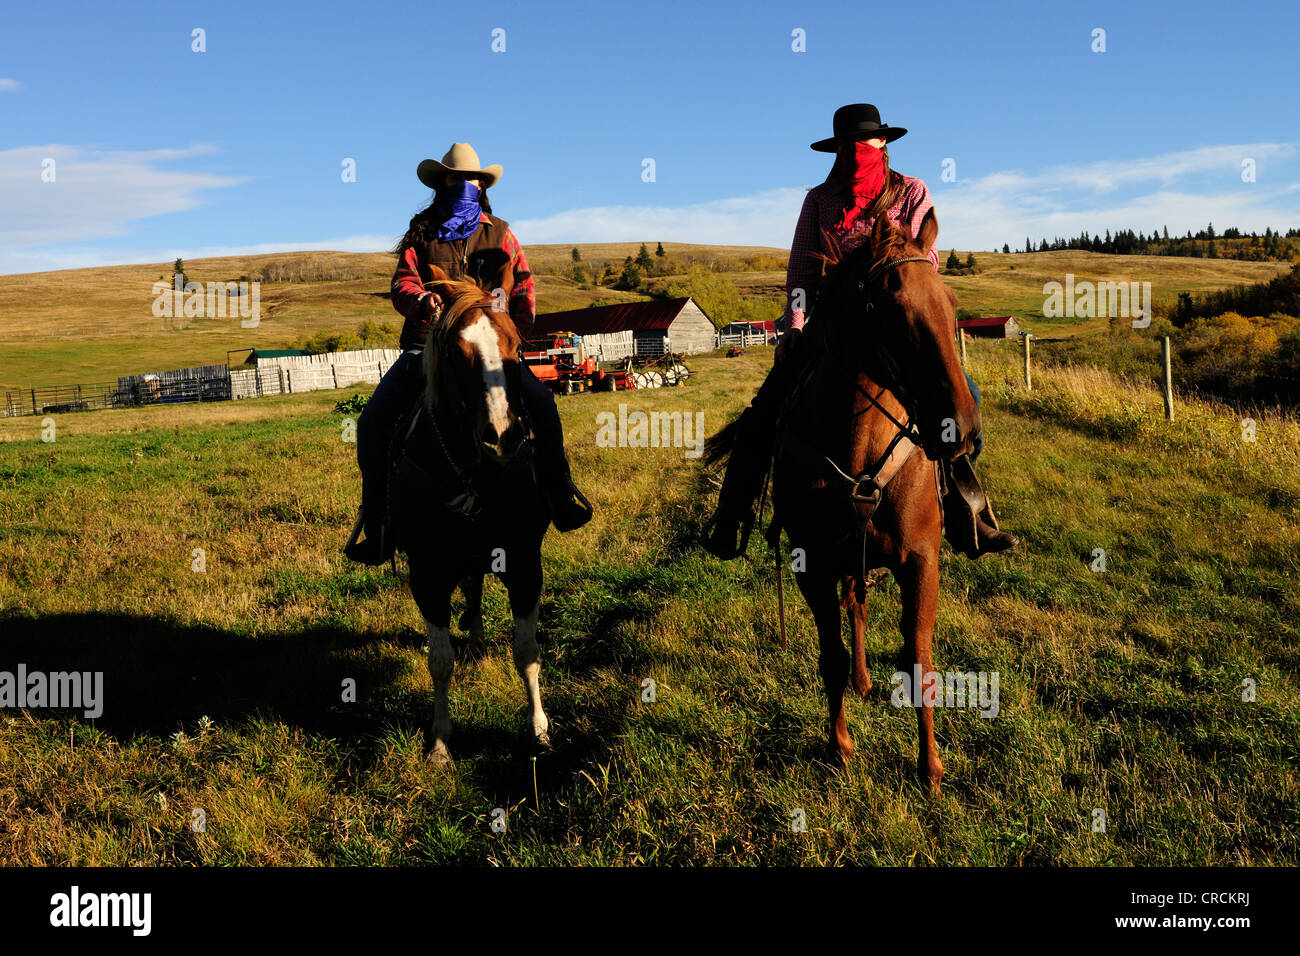 Deux cowgirls avec des mouchoirs sur leurs visages assis sur des chevaux, de la Saskatchewan, au Canada, en Amérique du Nord Banque D'Images